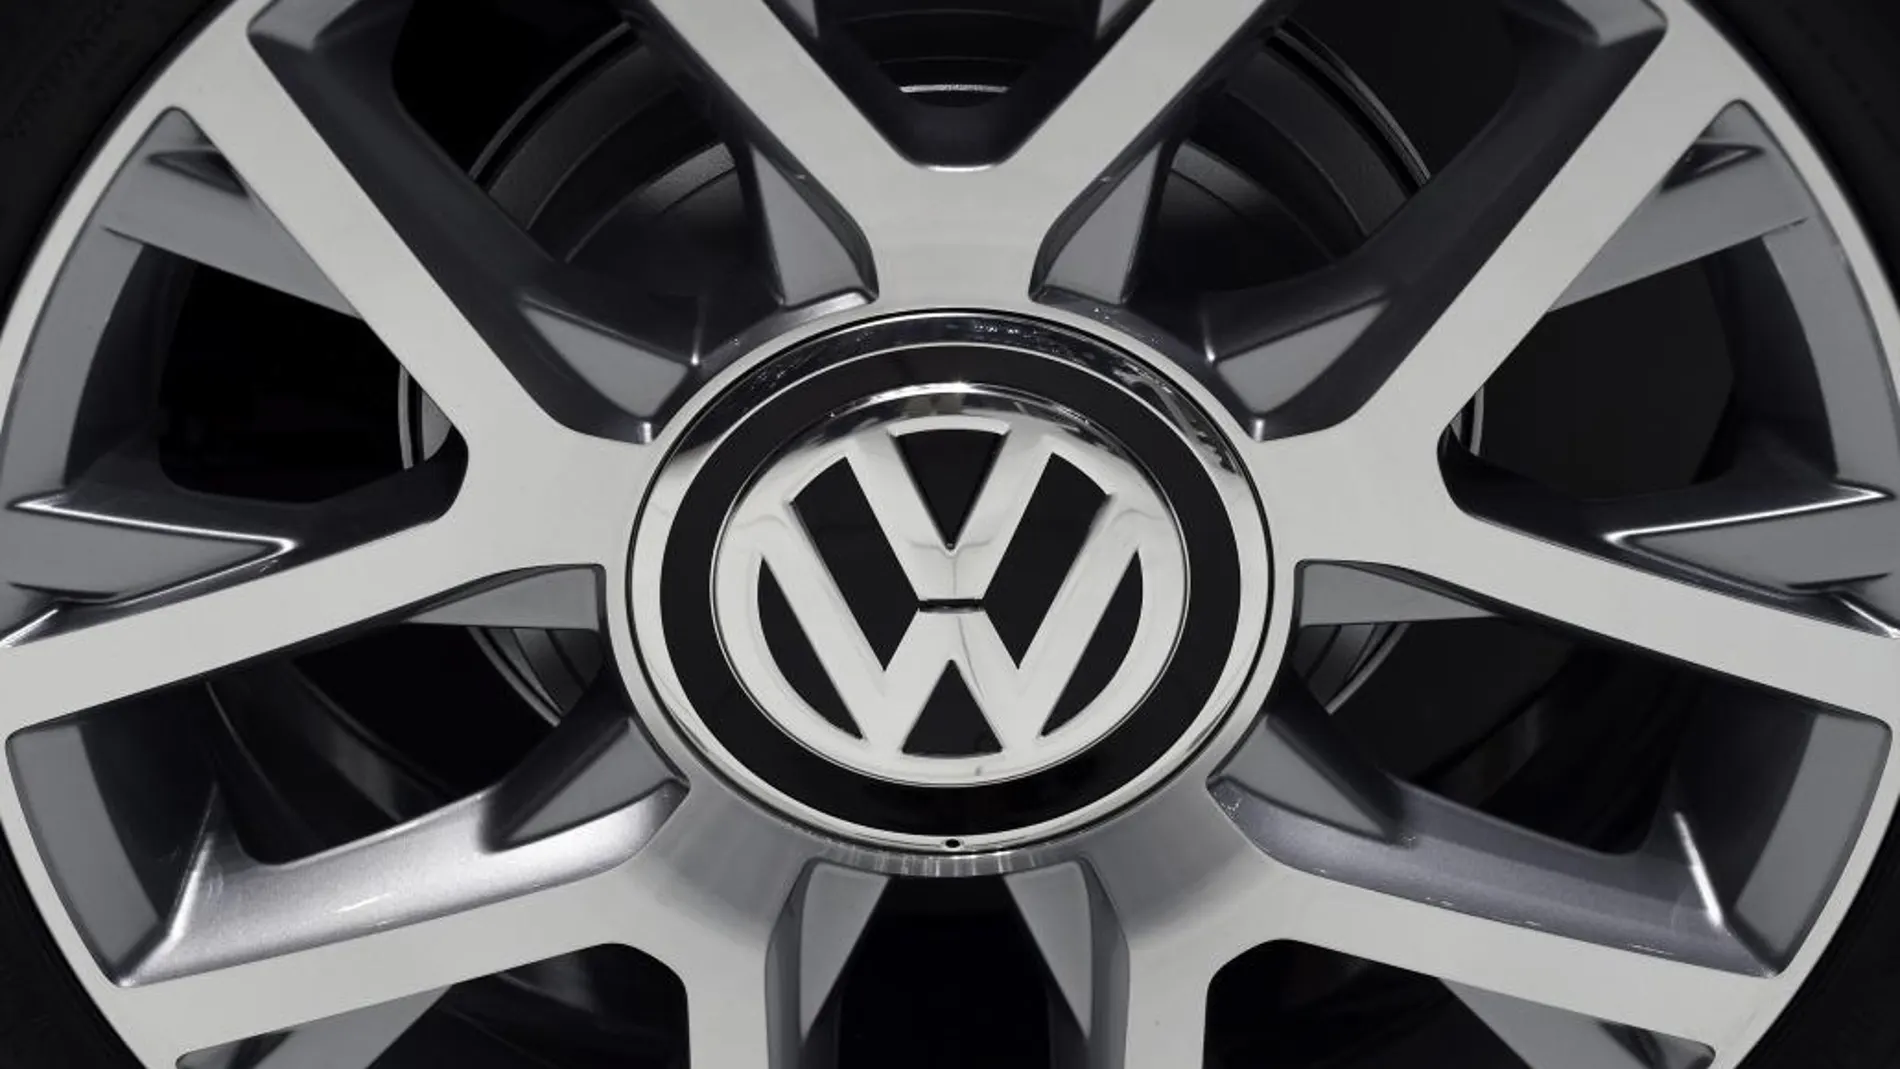 Detalle del logotipo de Volkswagen en la llanta de un coche expuesto en el Salón del Automóvil de Tokio (Japón)